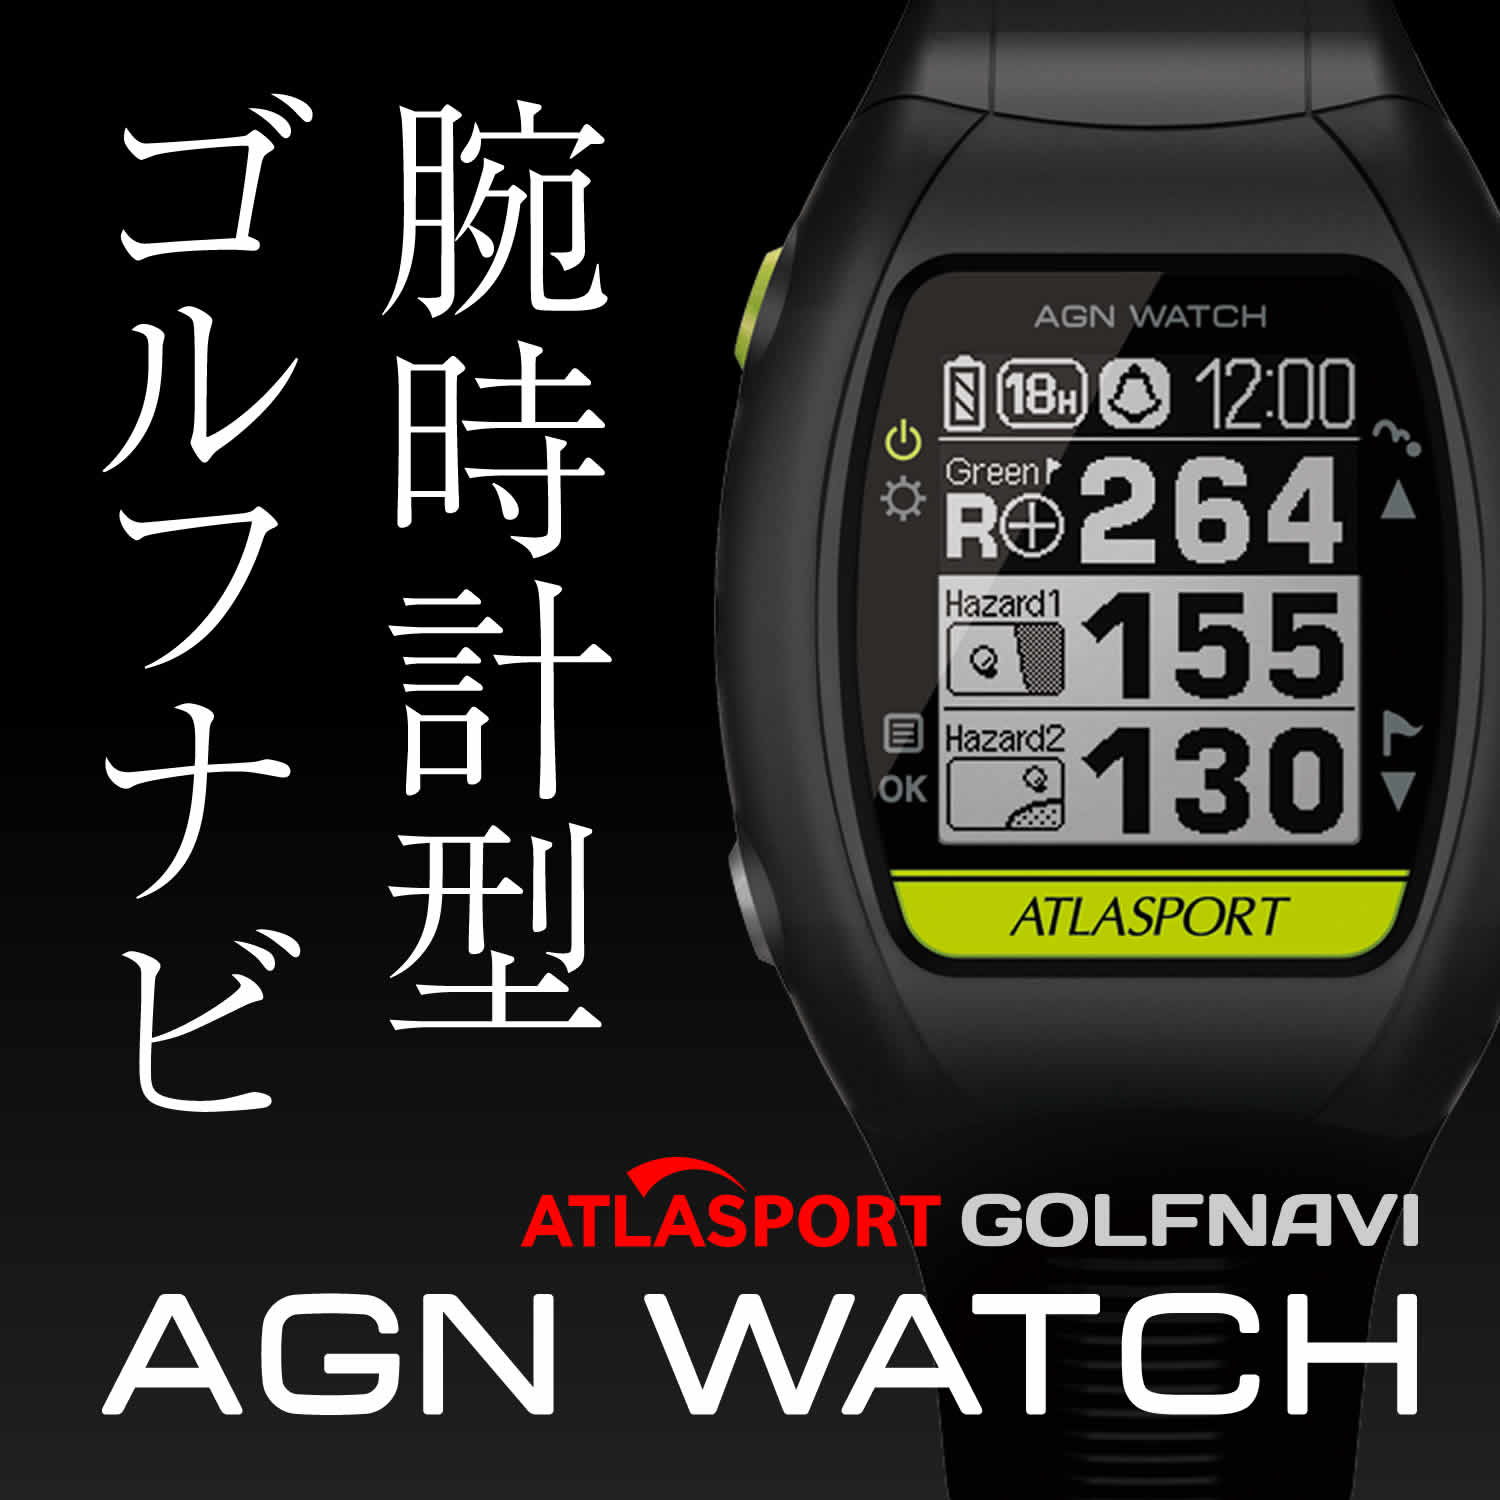 腕時計型ゴルフナビ ATLASPORT「AGN WATCH」スペシャルページ